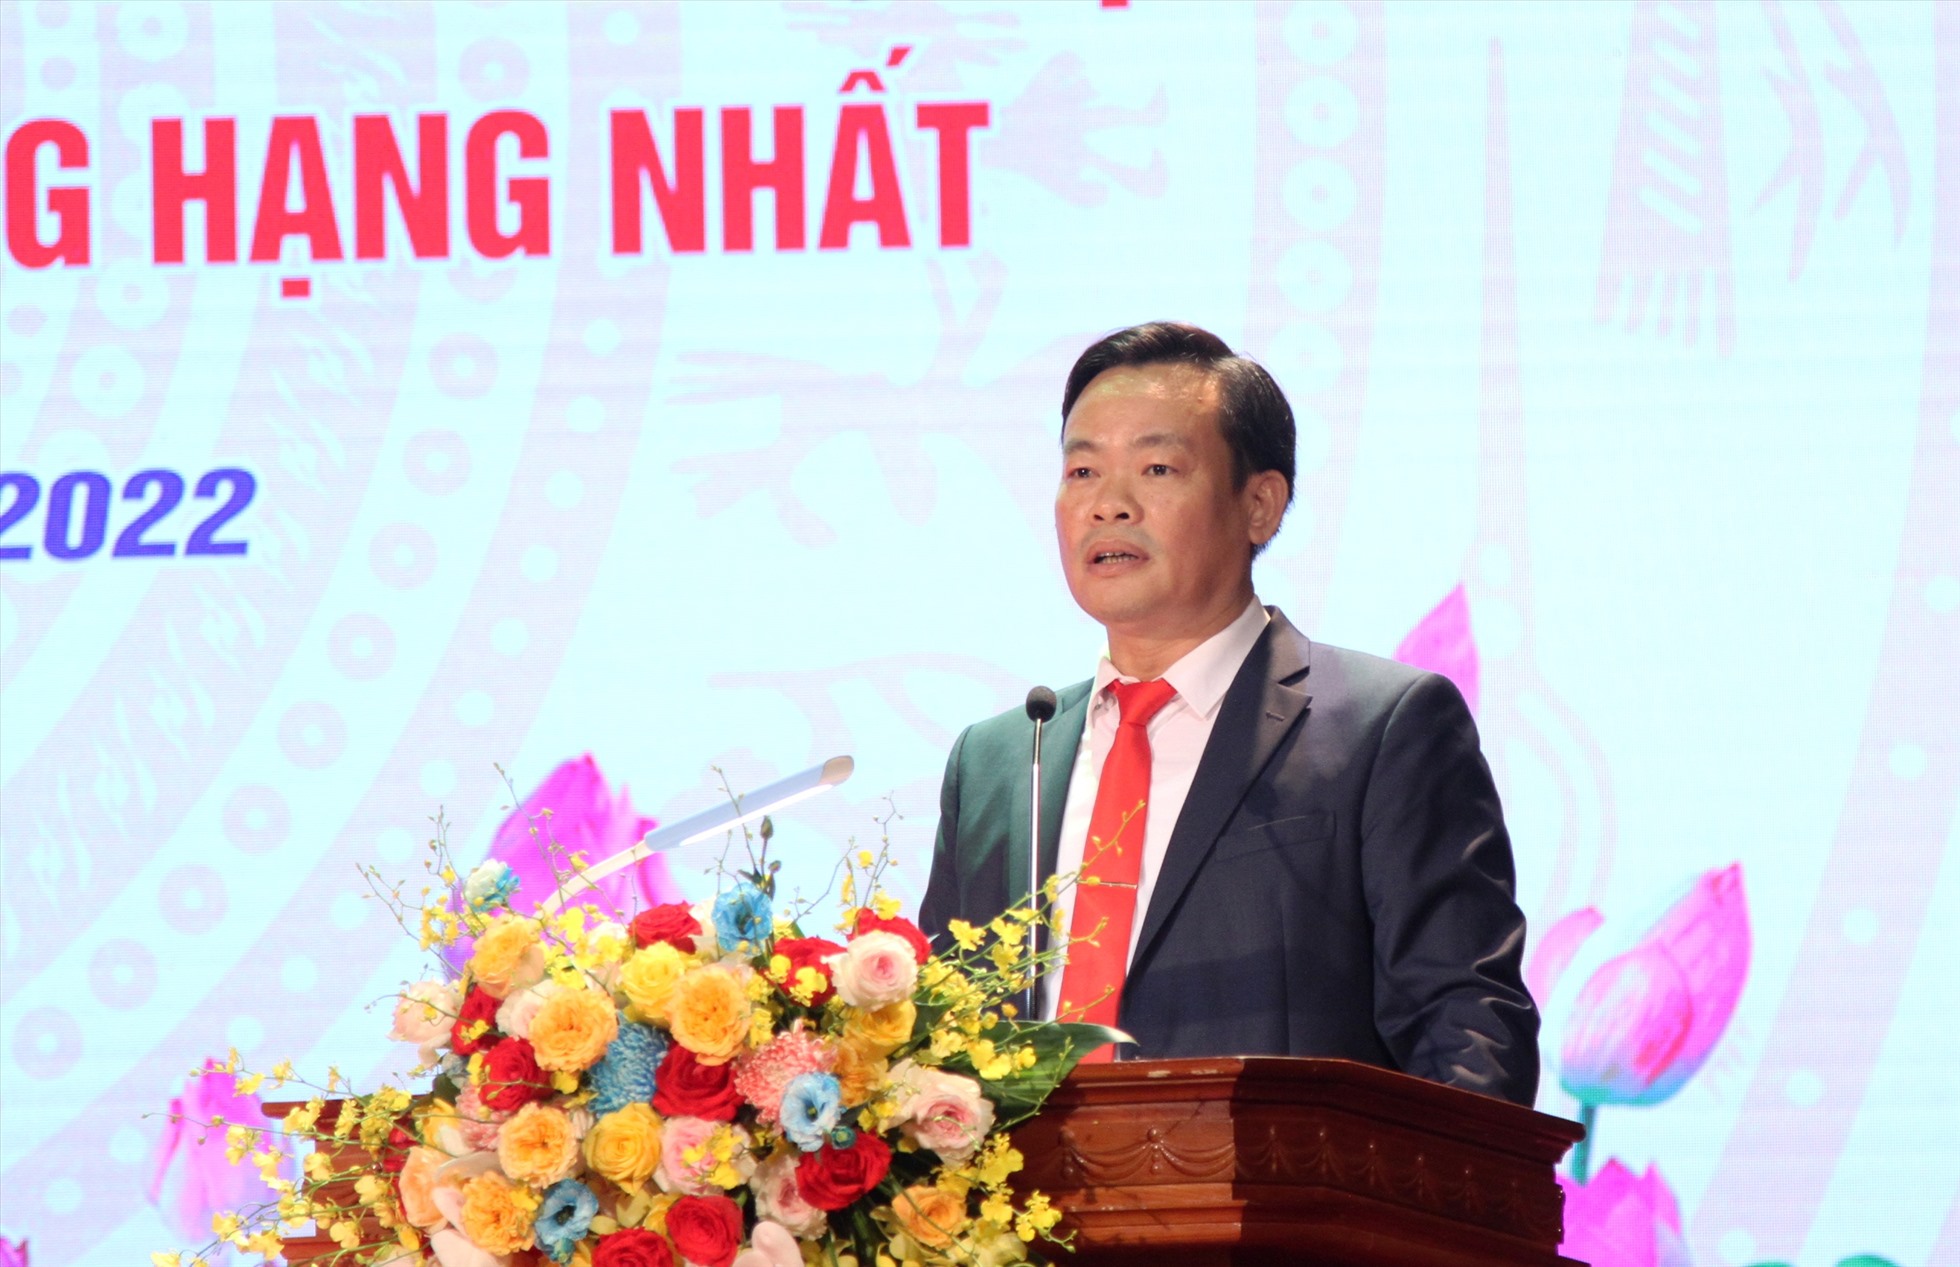 Ông Bùi Anh Tuấn, Chủ tịch UBND quận Cầu Giấy phát biểu tại hội nghị.